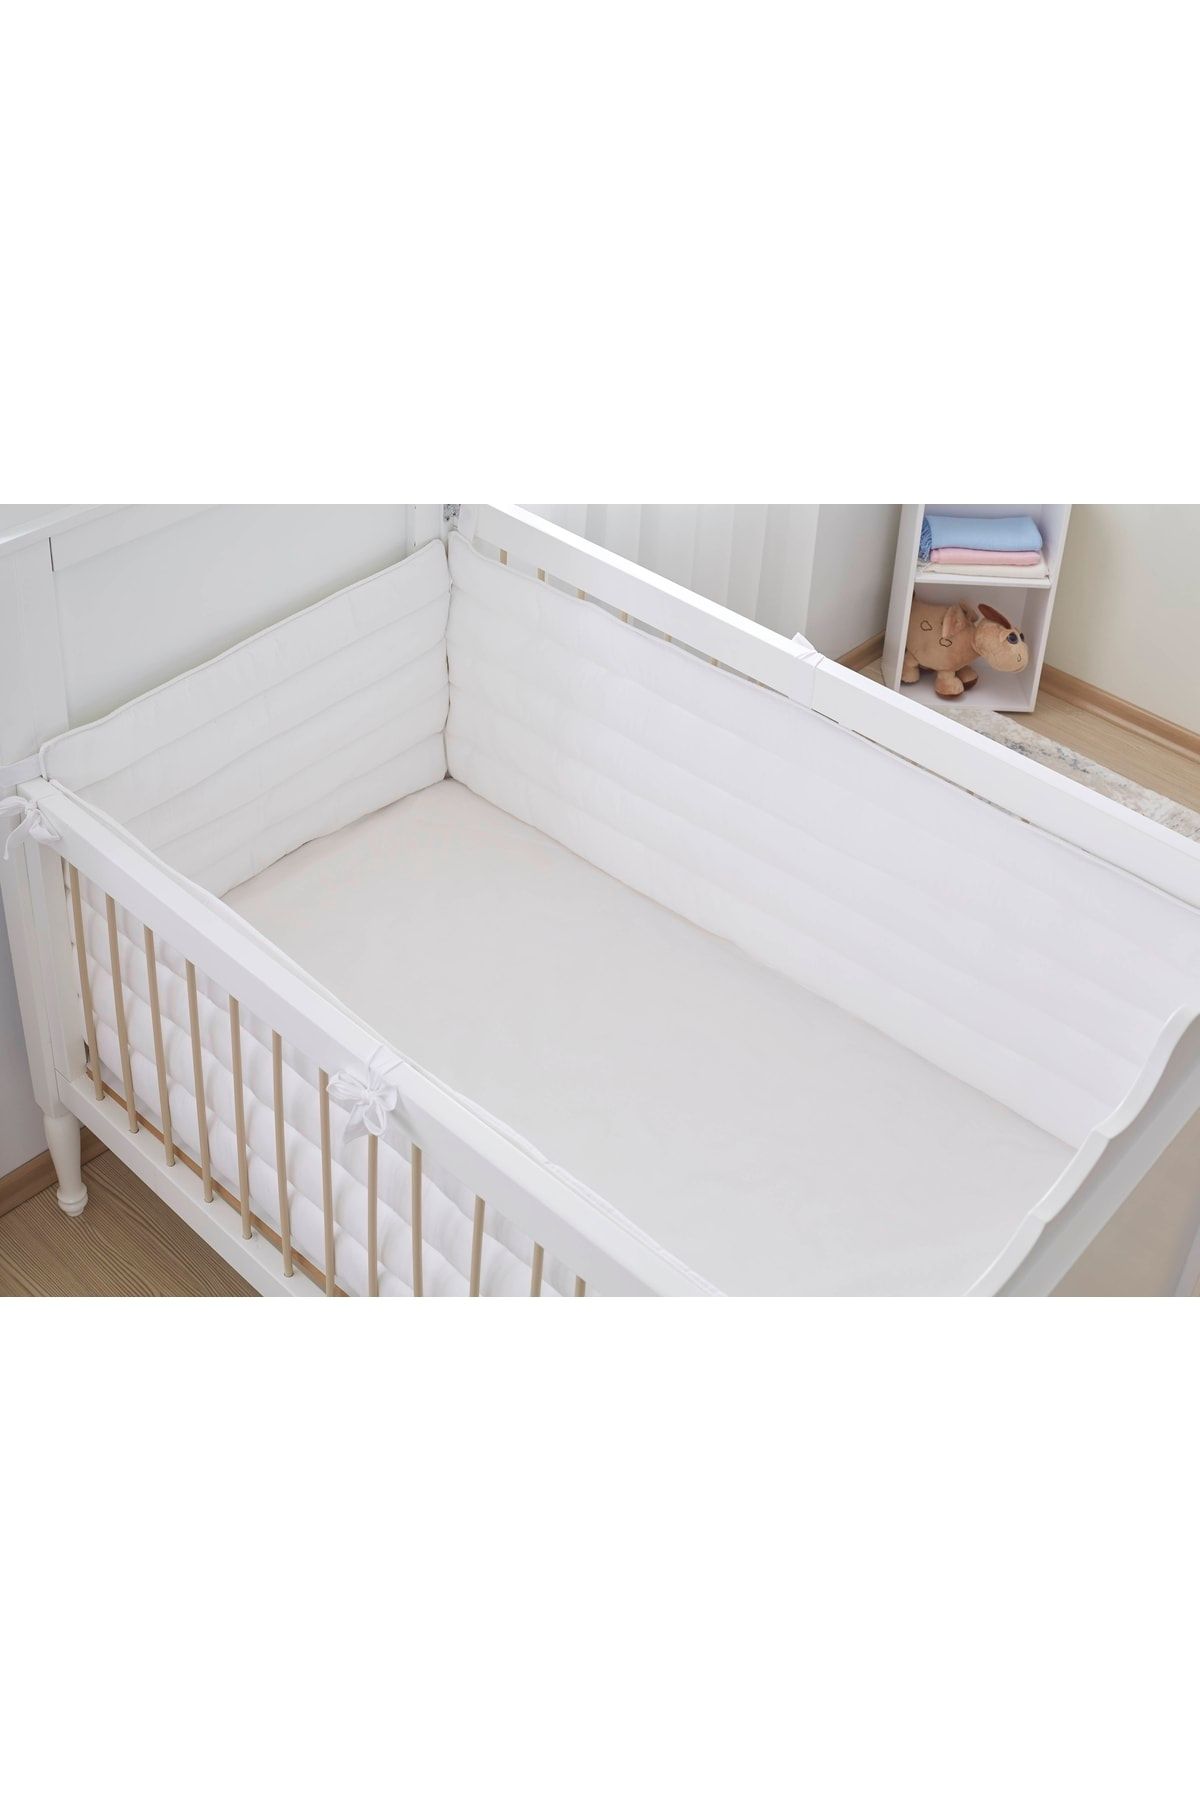 Aybi Baby Beşik Kenar Koruyucu Set 4 Parça - Beyaz - 60x120 Cm